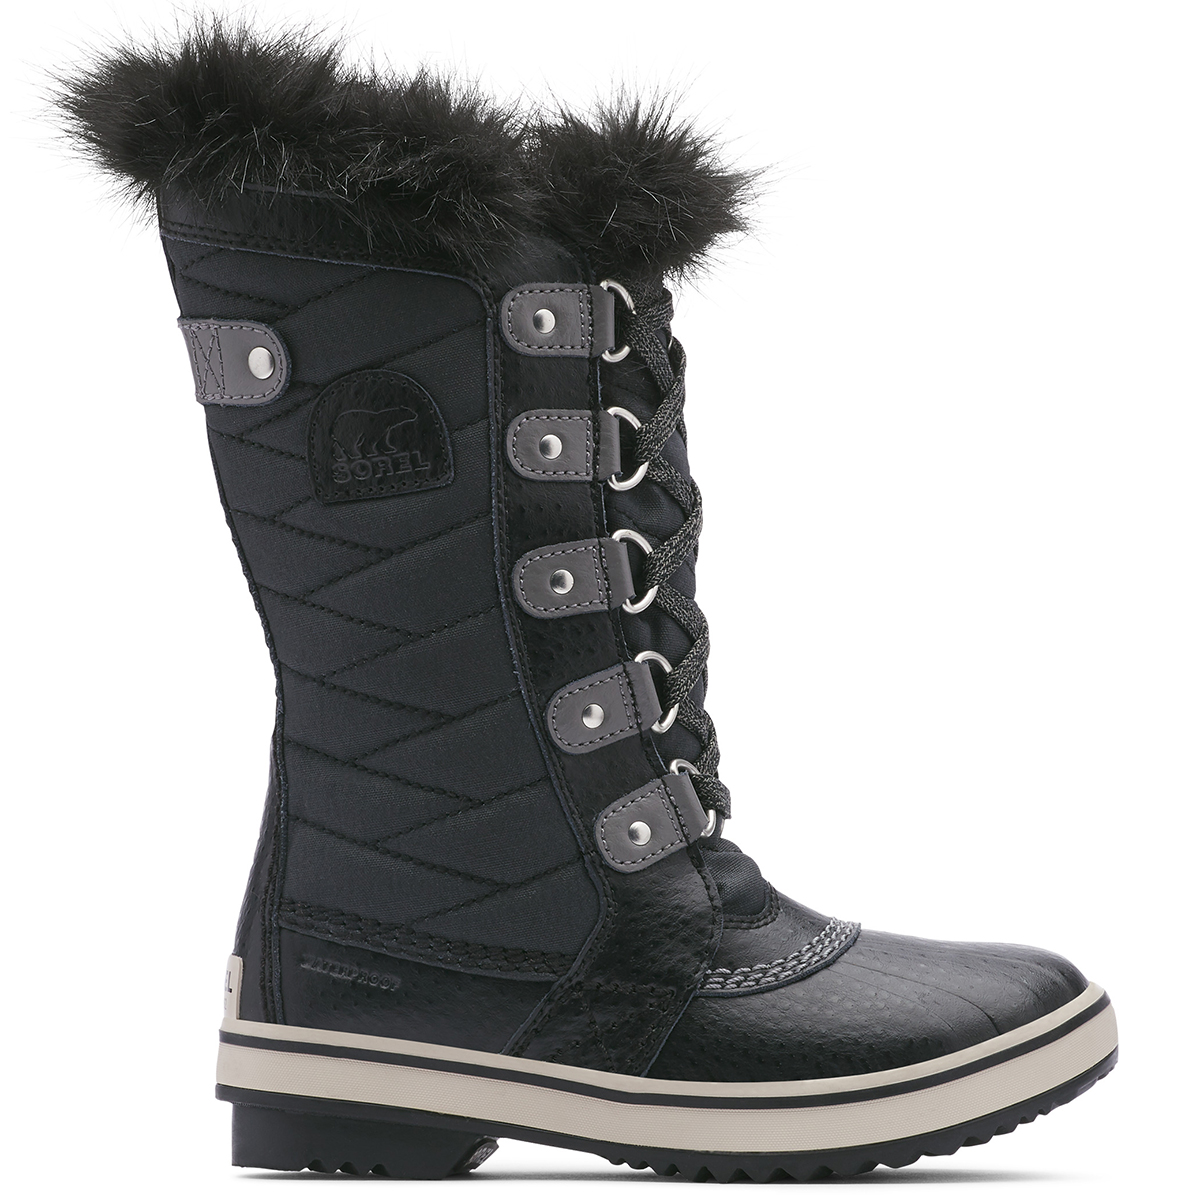 Sorel Girls' Tofino Ii Waterproof Winter Boots